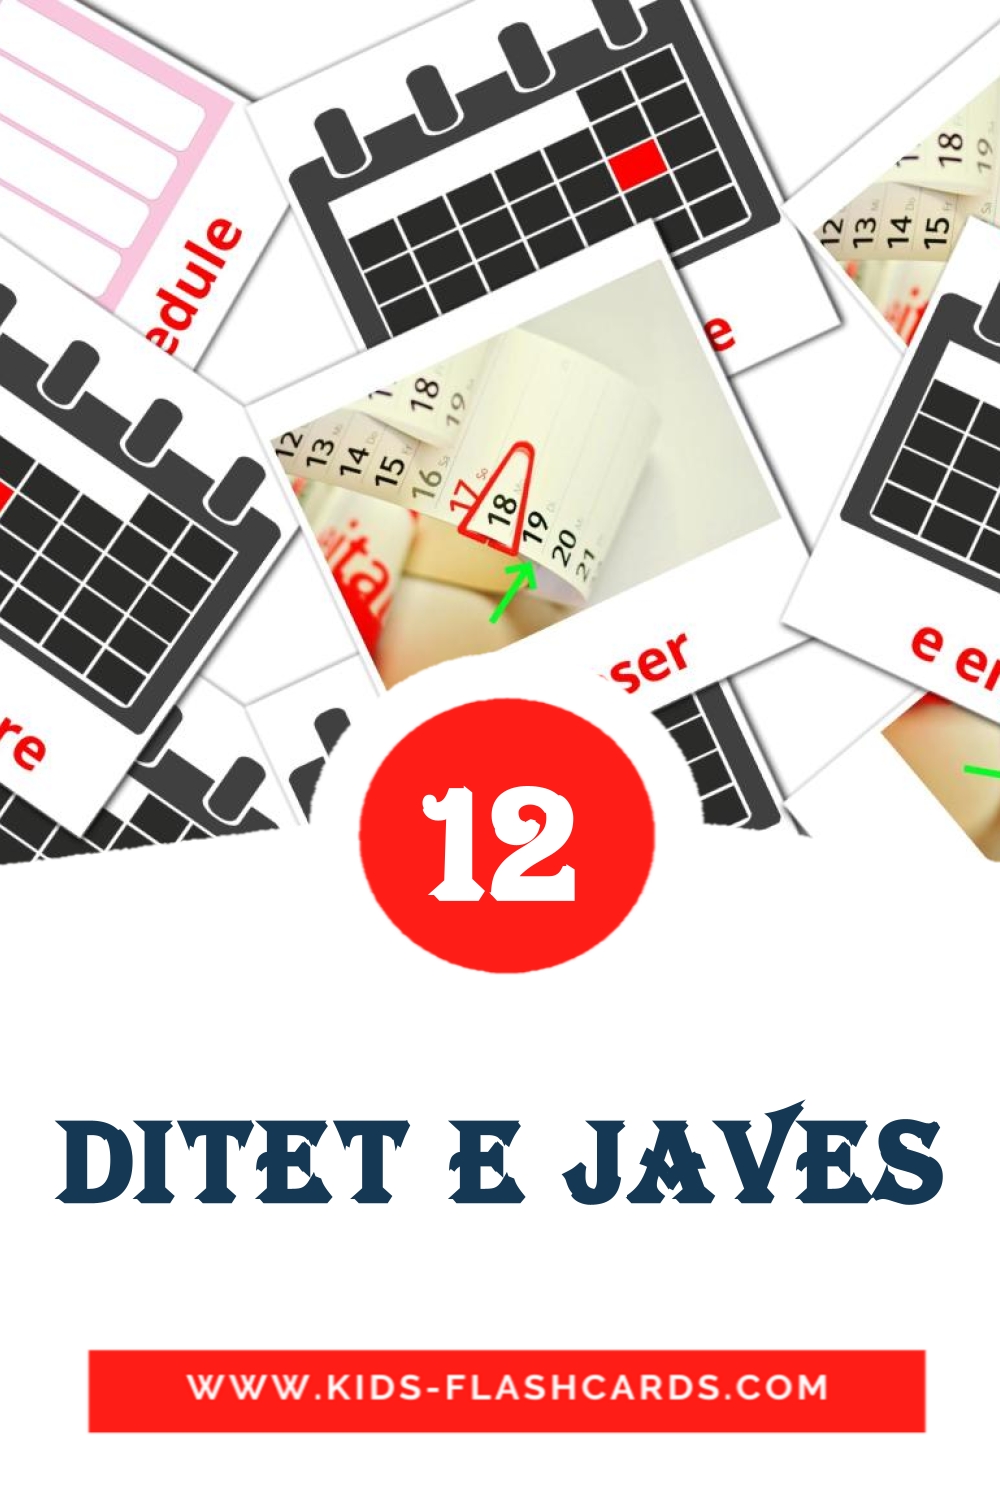 Ditet e javes на албанском для Детского Сада (12 карточек)